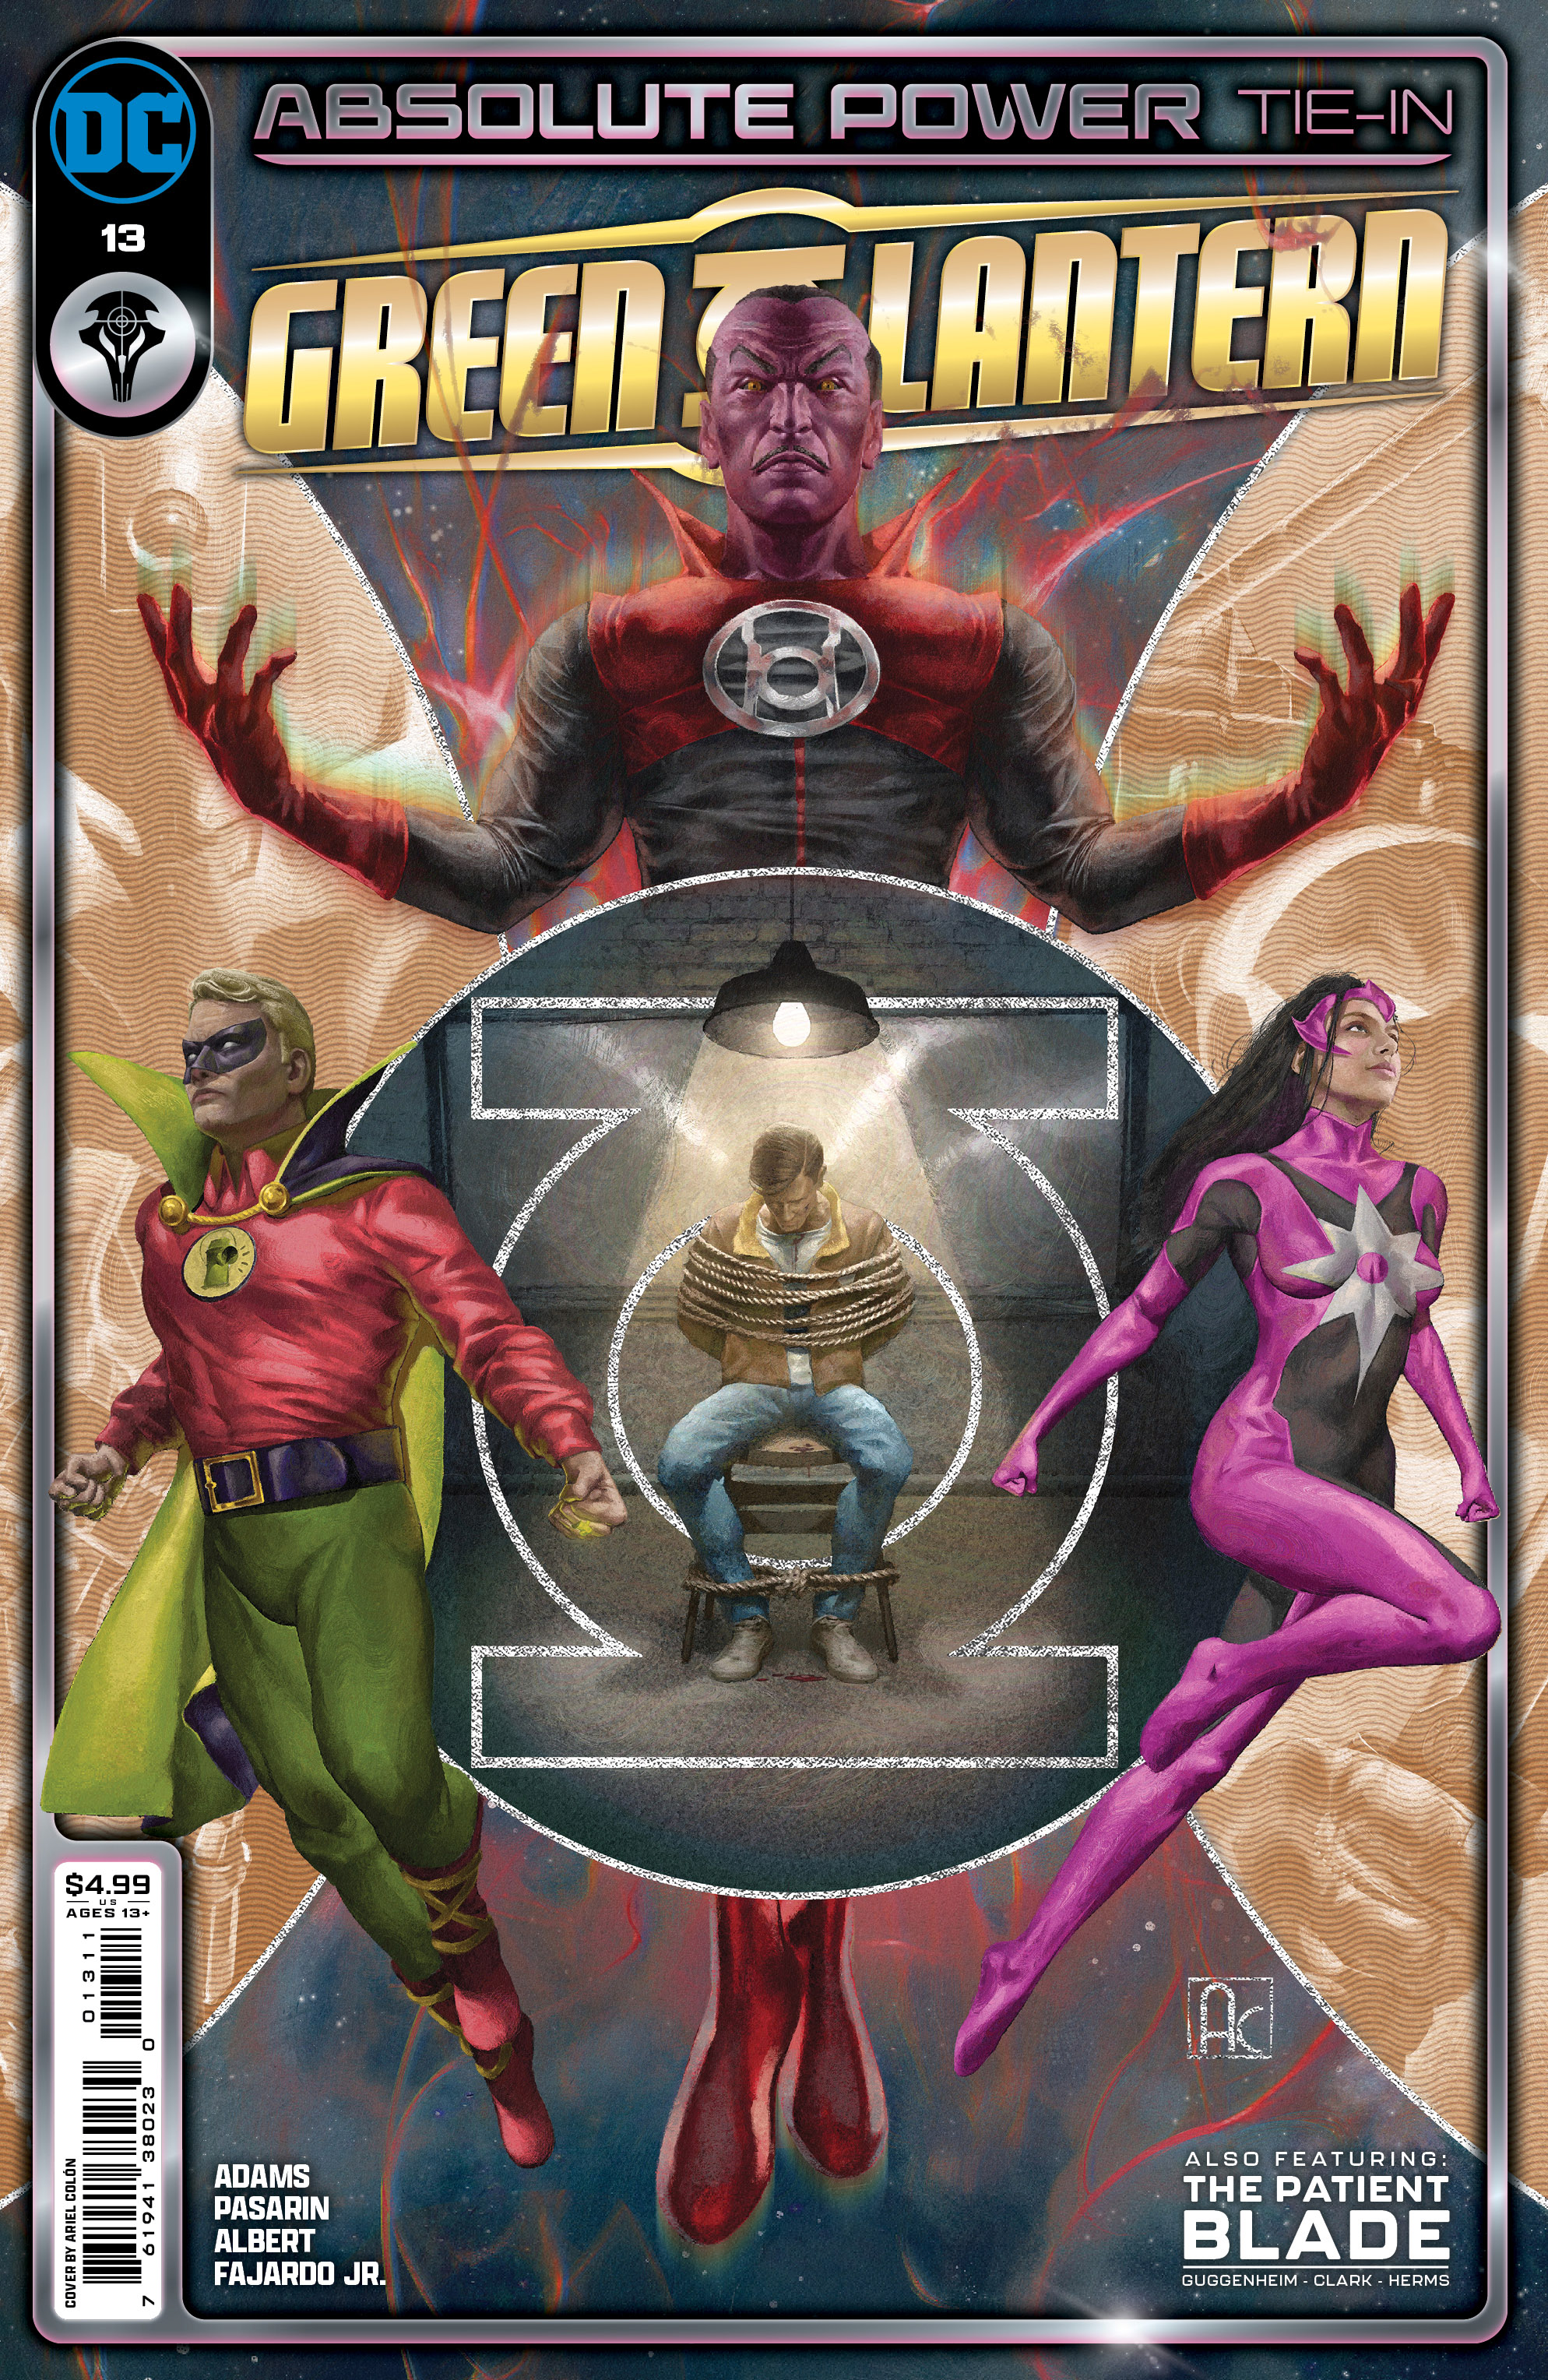 Green Lantern #13 Cover A Ariel Colon (Absolute Power)